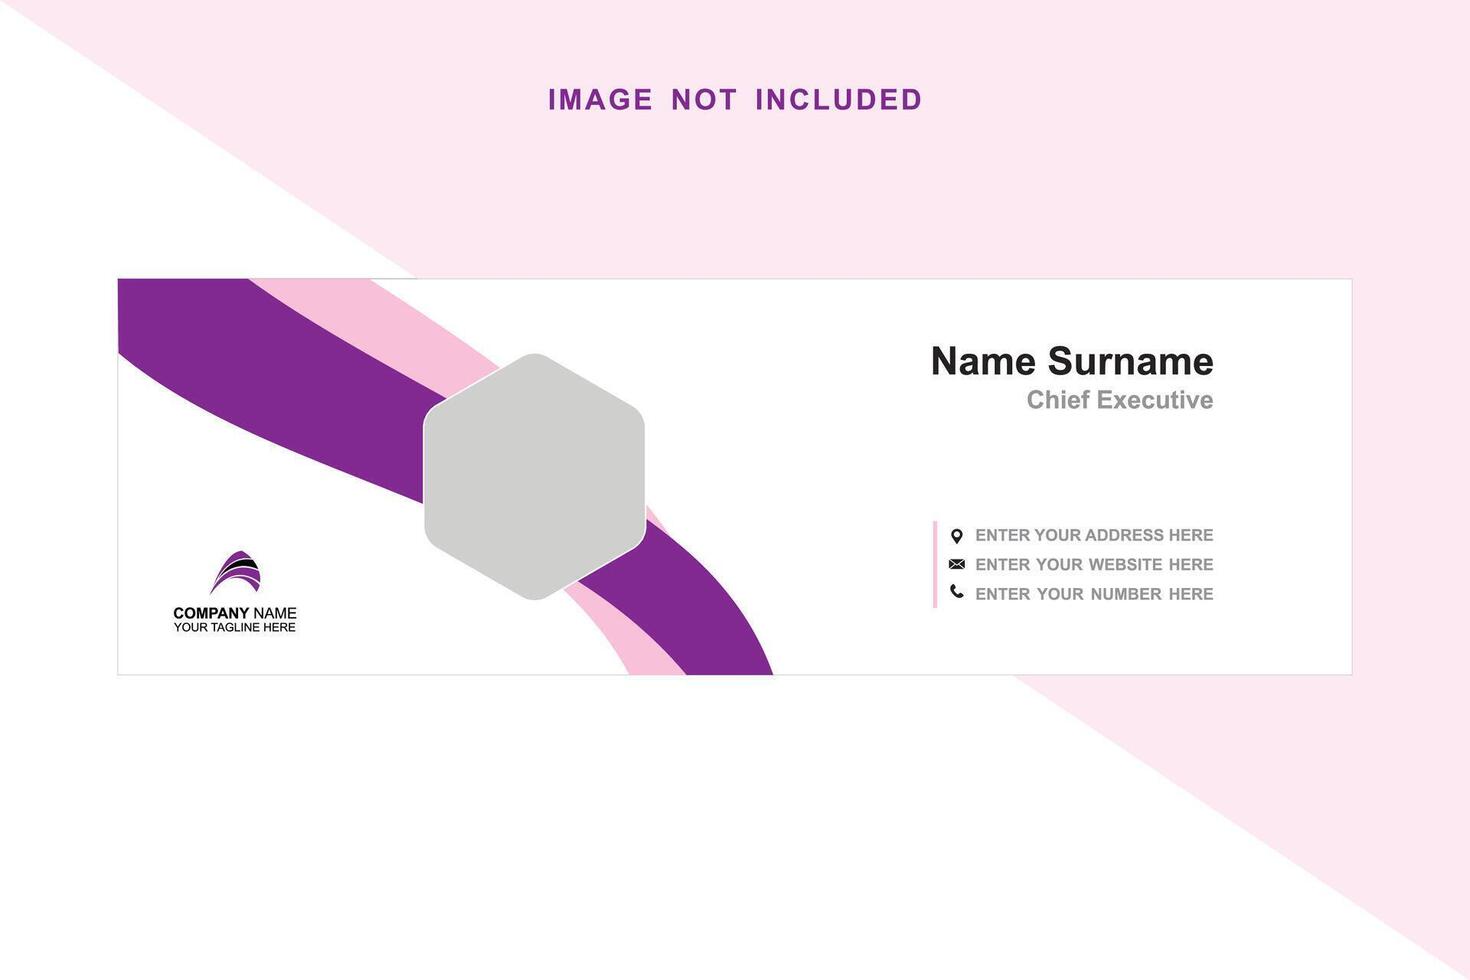 púrpura rosado color combinación vector resumen diseño bandera web modelo completamente editable eps 10 archivo